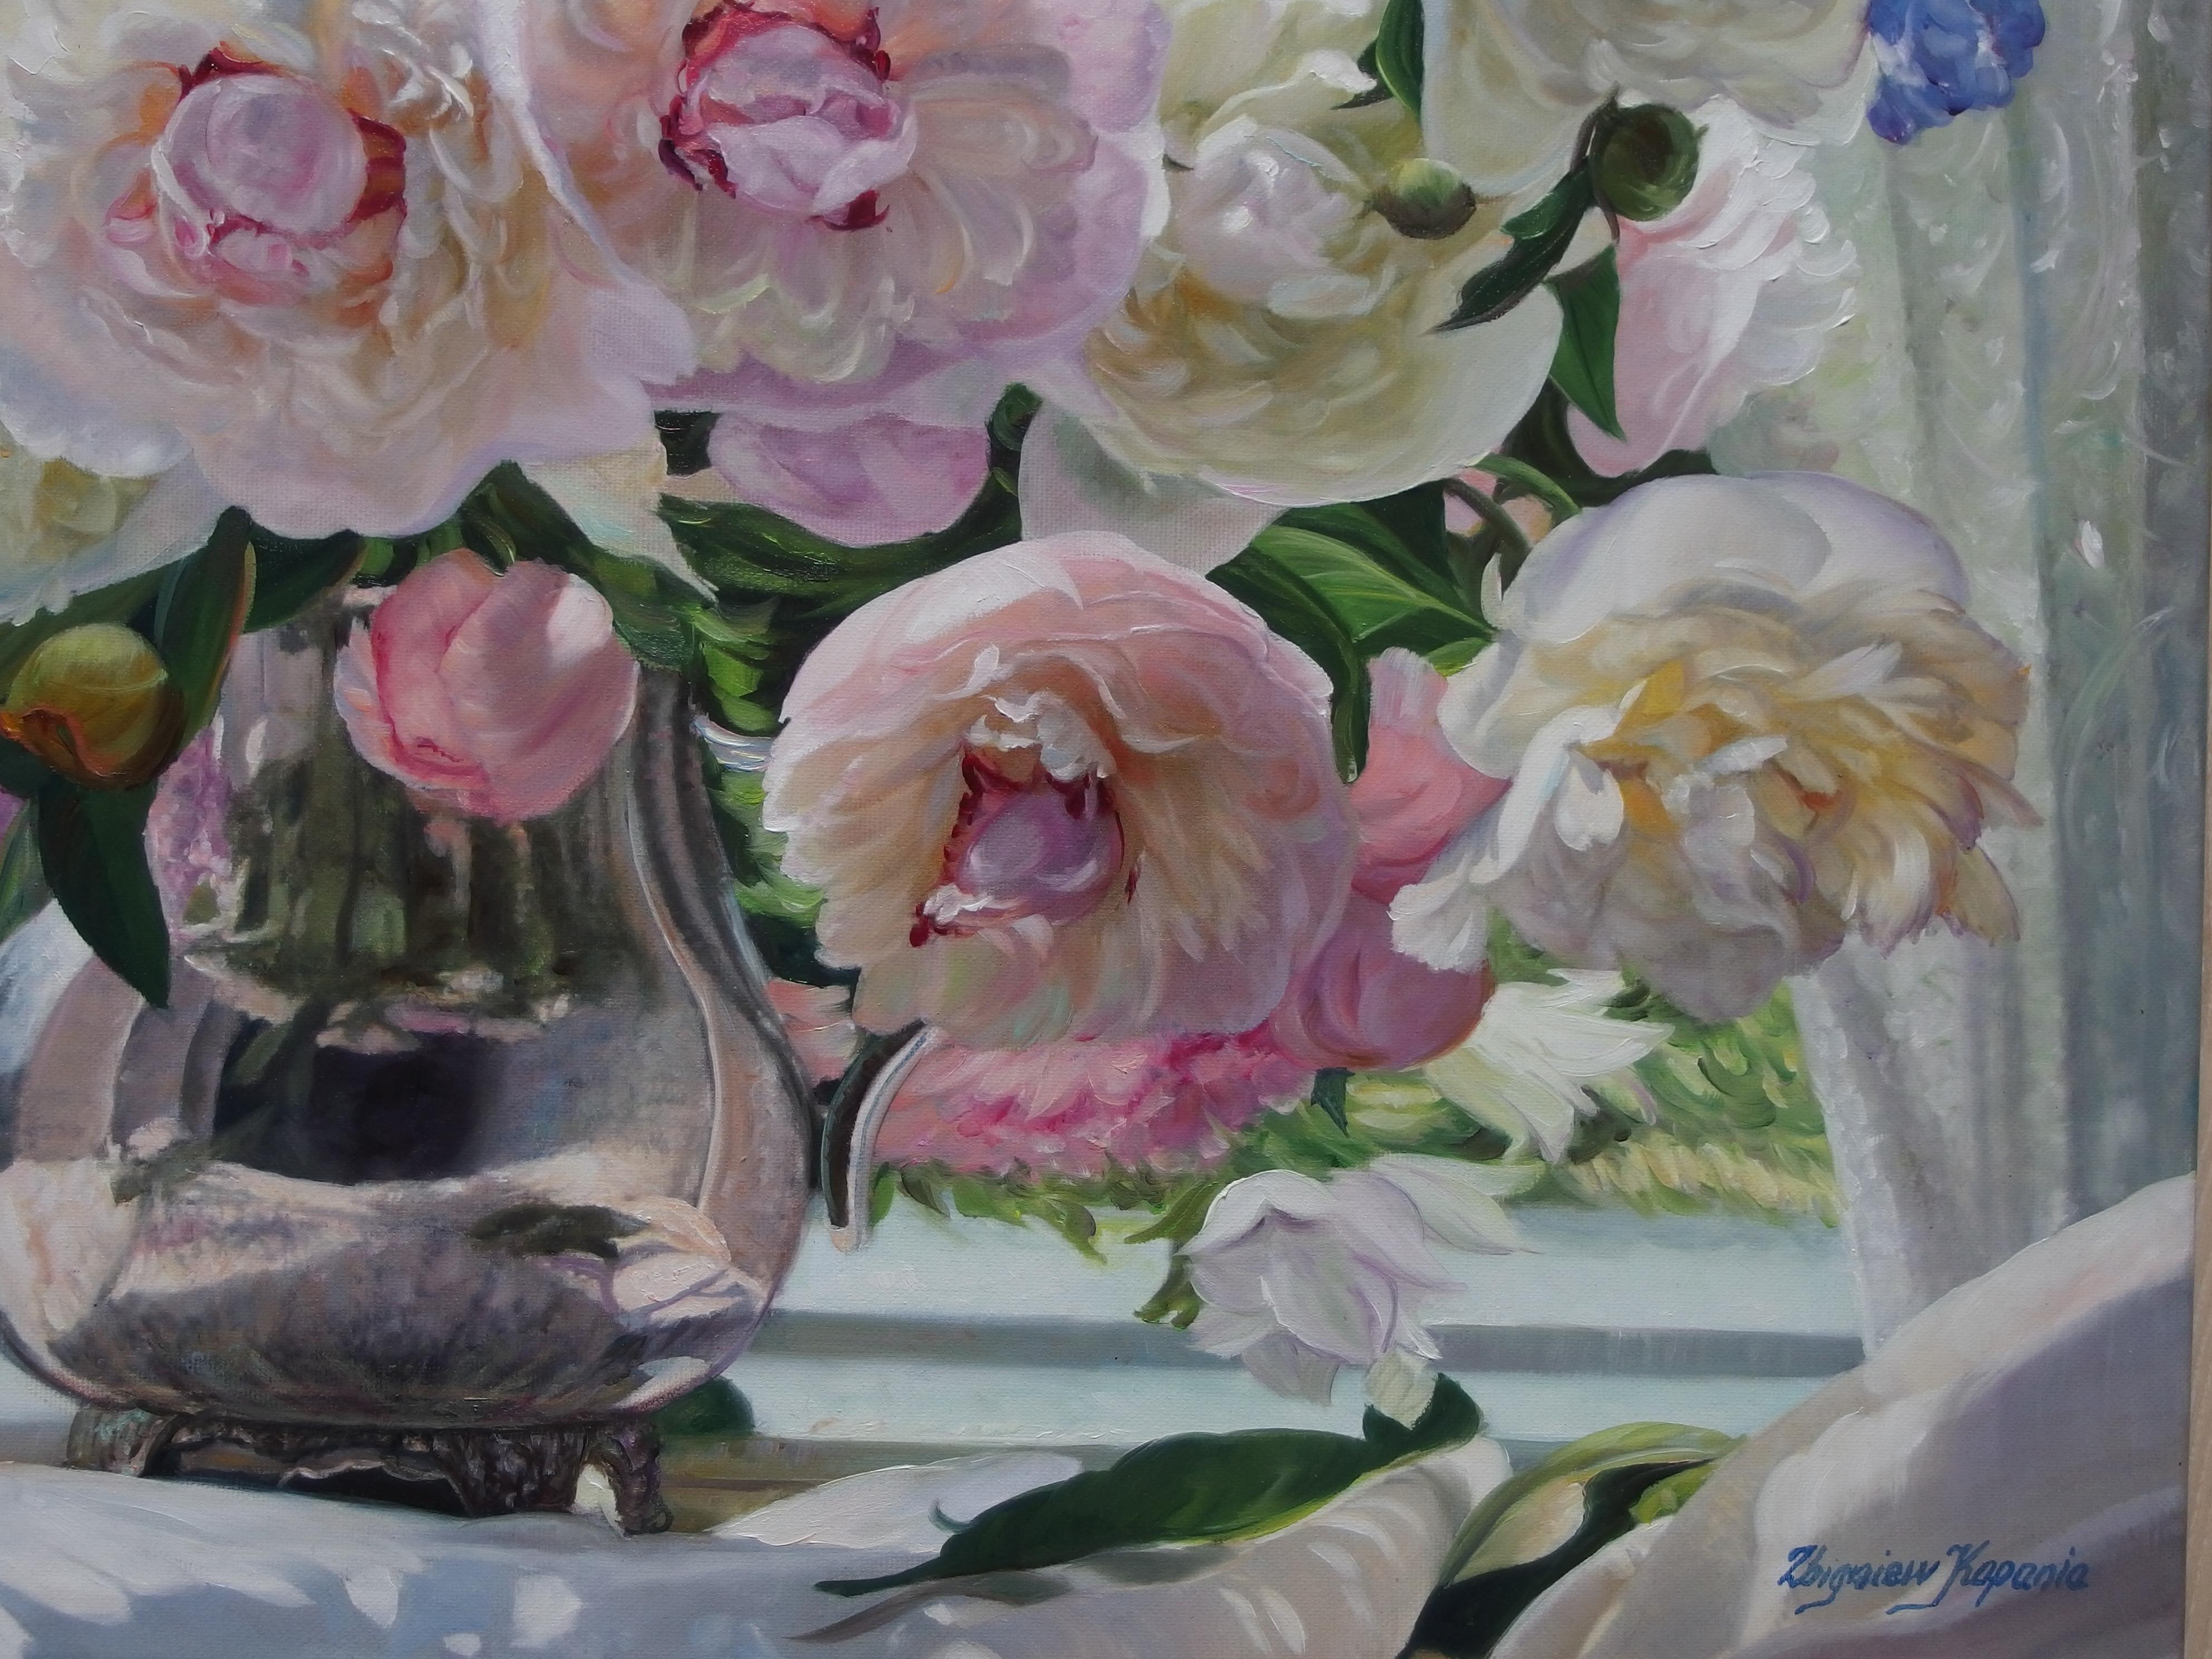 Peonies blanches et roses dans la fenêtre - Painting de Zbigniew Kopania